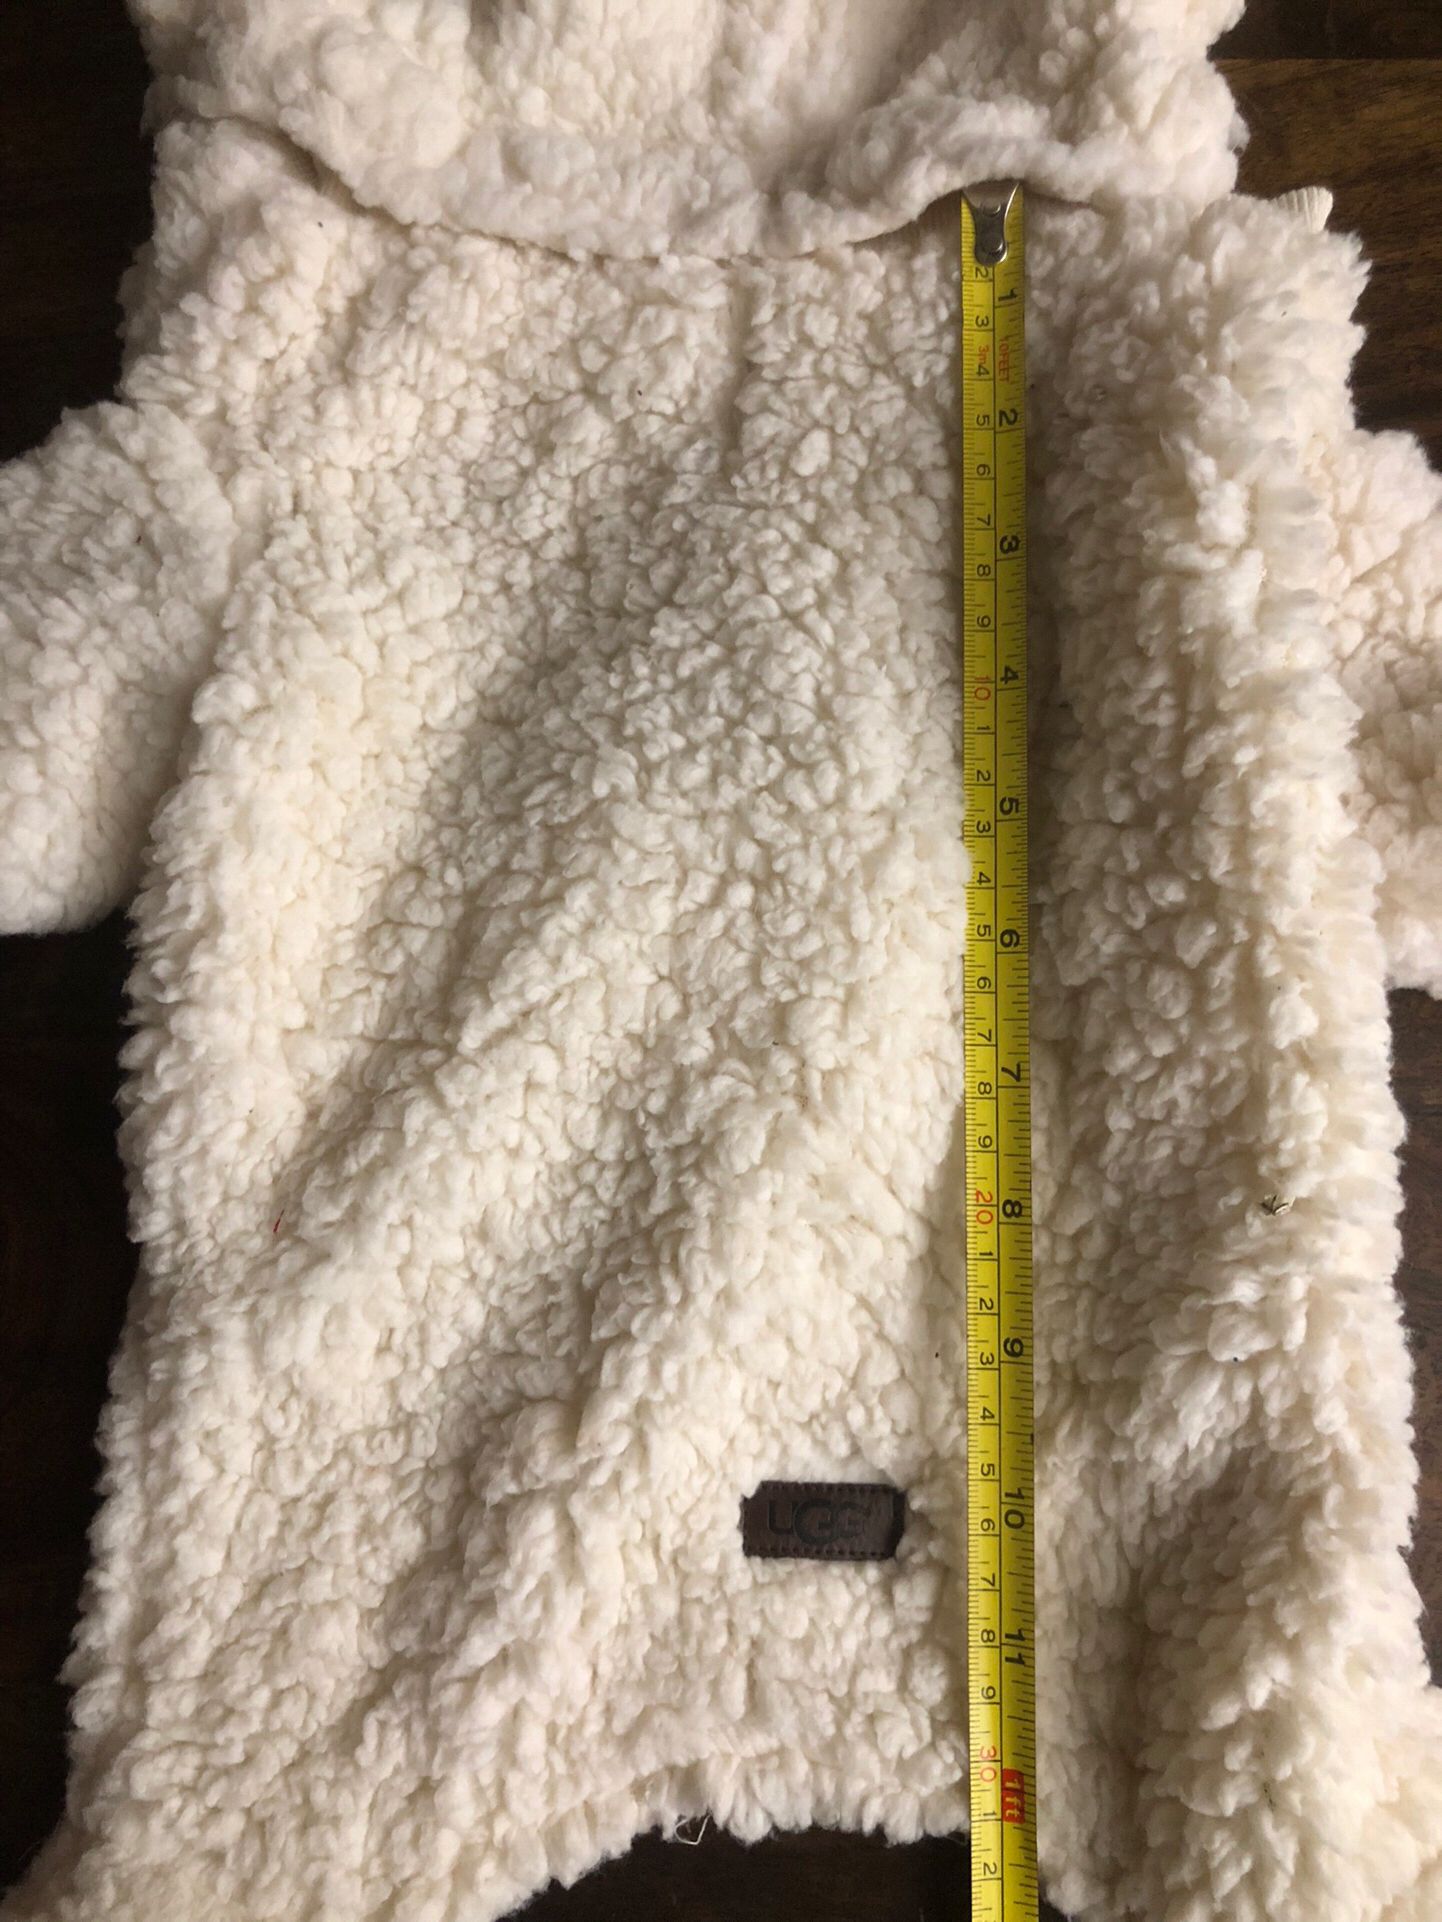 Ugg Dog Sherpa Coat/Costume Removeable Hood Size Medium